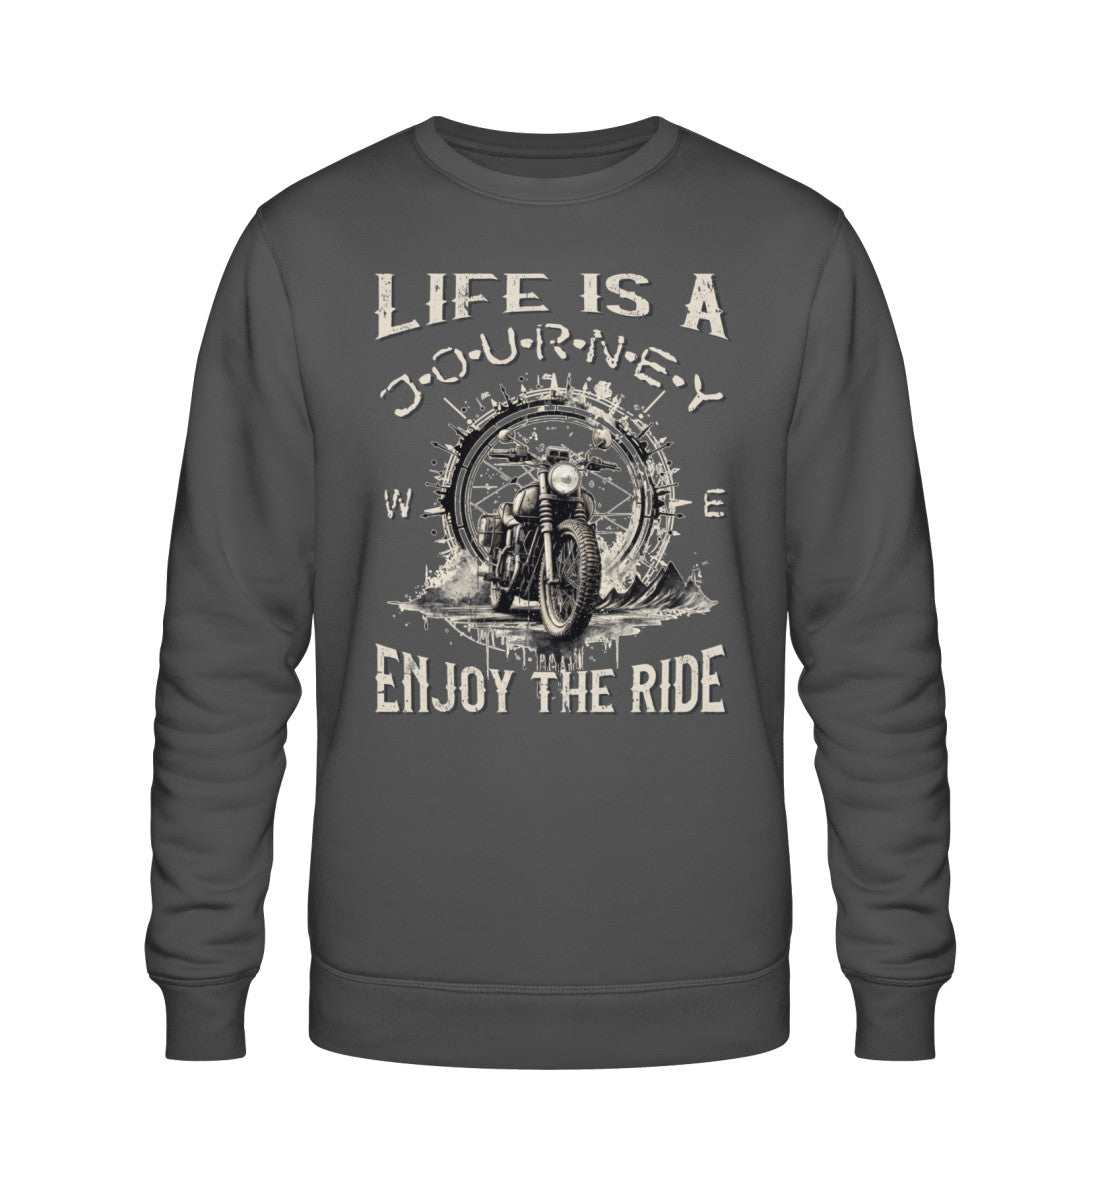 Ein Biker Sweatshirt für Motorradfahrer von Wingbikers mit dem Aufdruck, Life Is A Journey - Enjoy The Ride - in dunkelgrau.